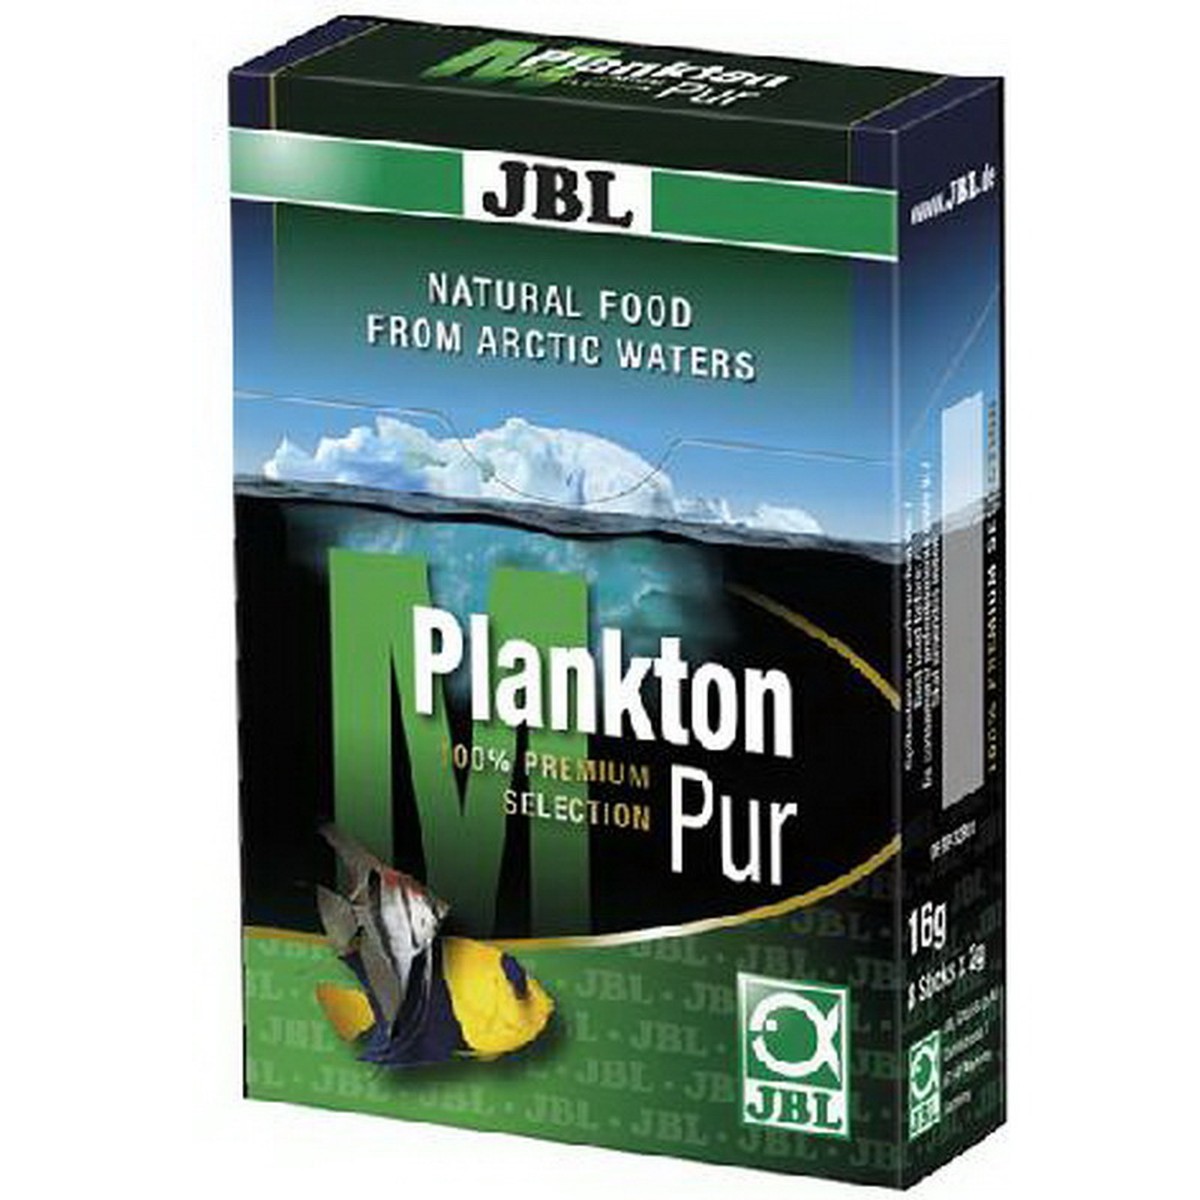   JBL Plankton pur M 8x2 grammes (16 grs)  16 gr (8x2gr)